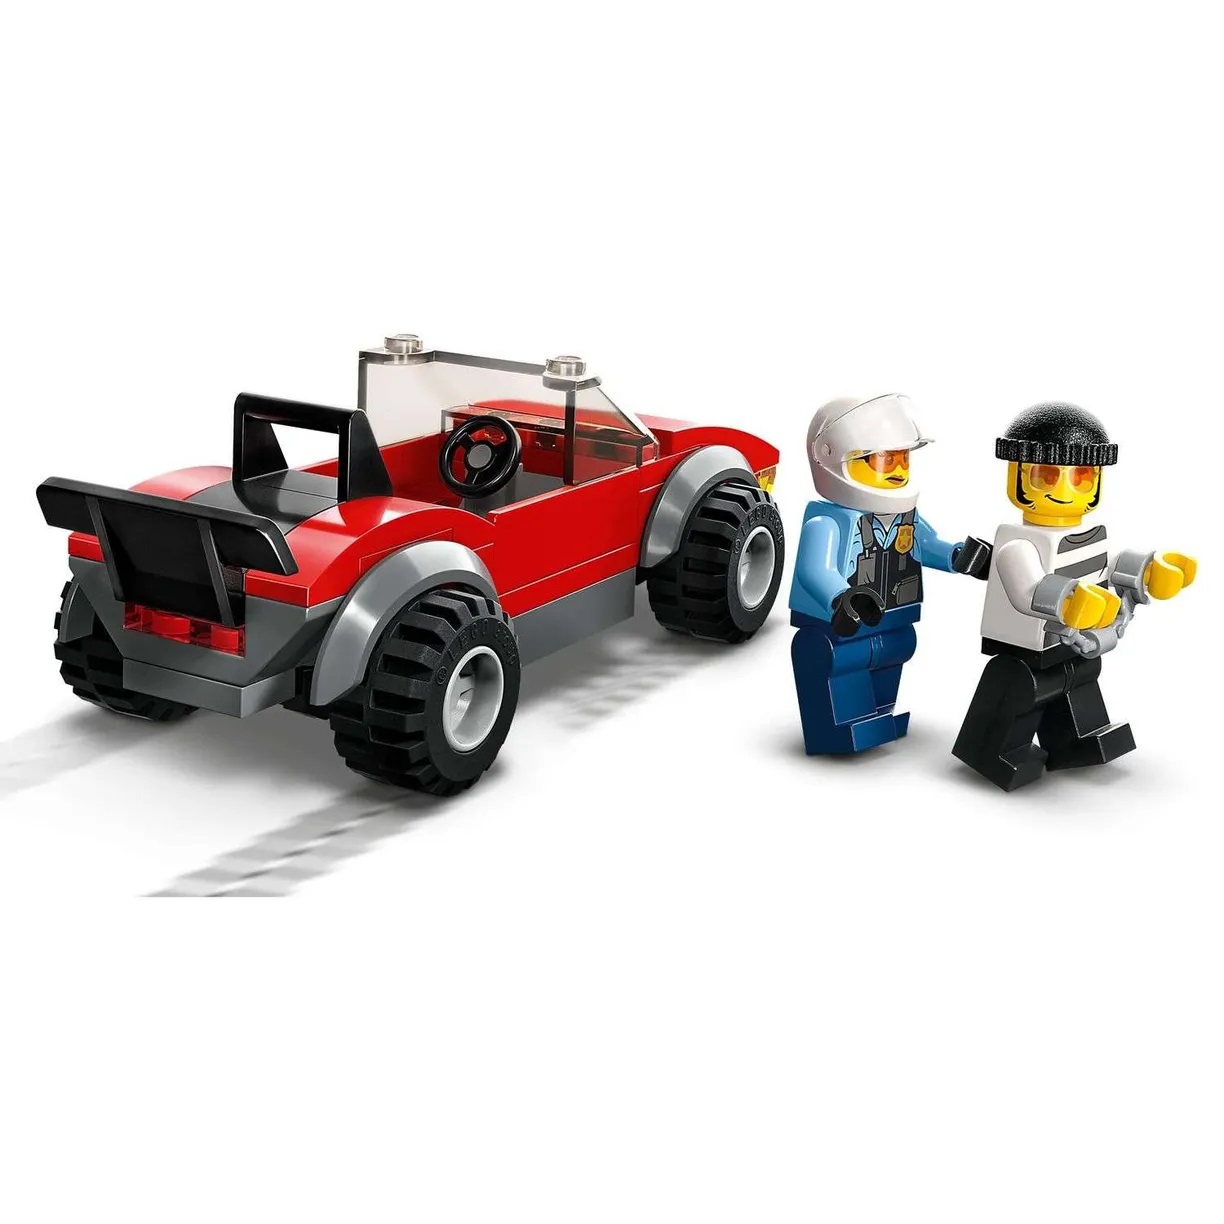 Lego City 60392 Полицейская погоня